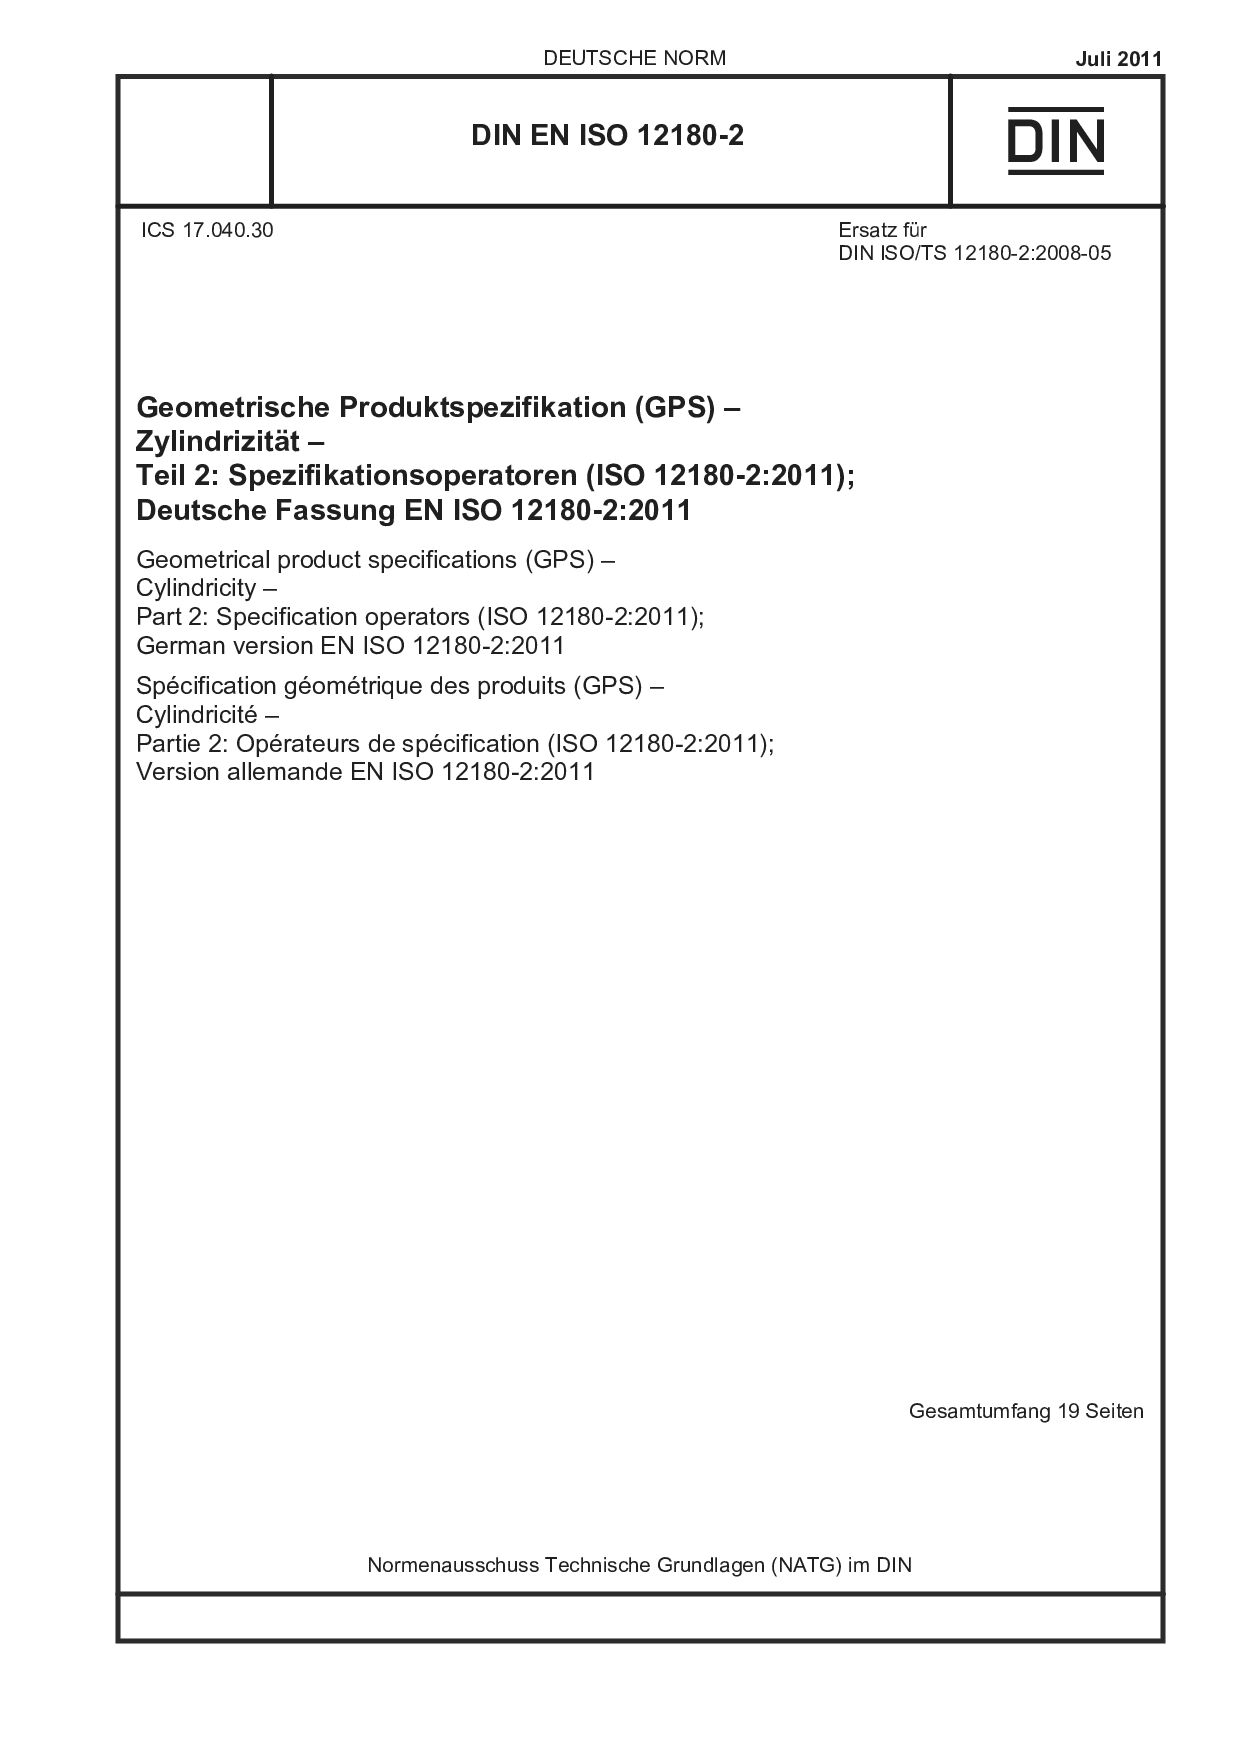 DIN EN ISO 12180-2:2011